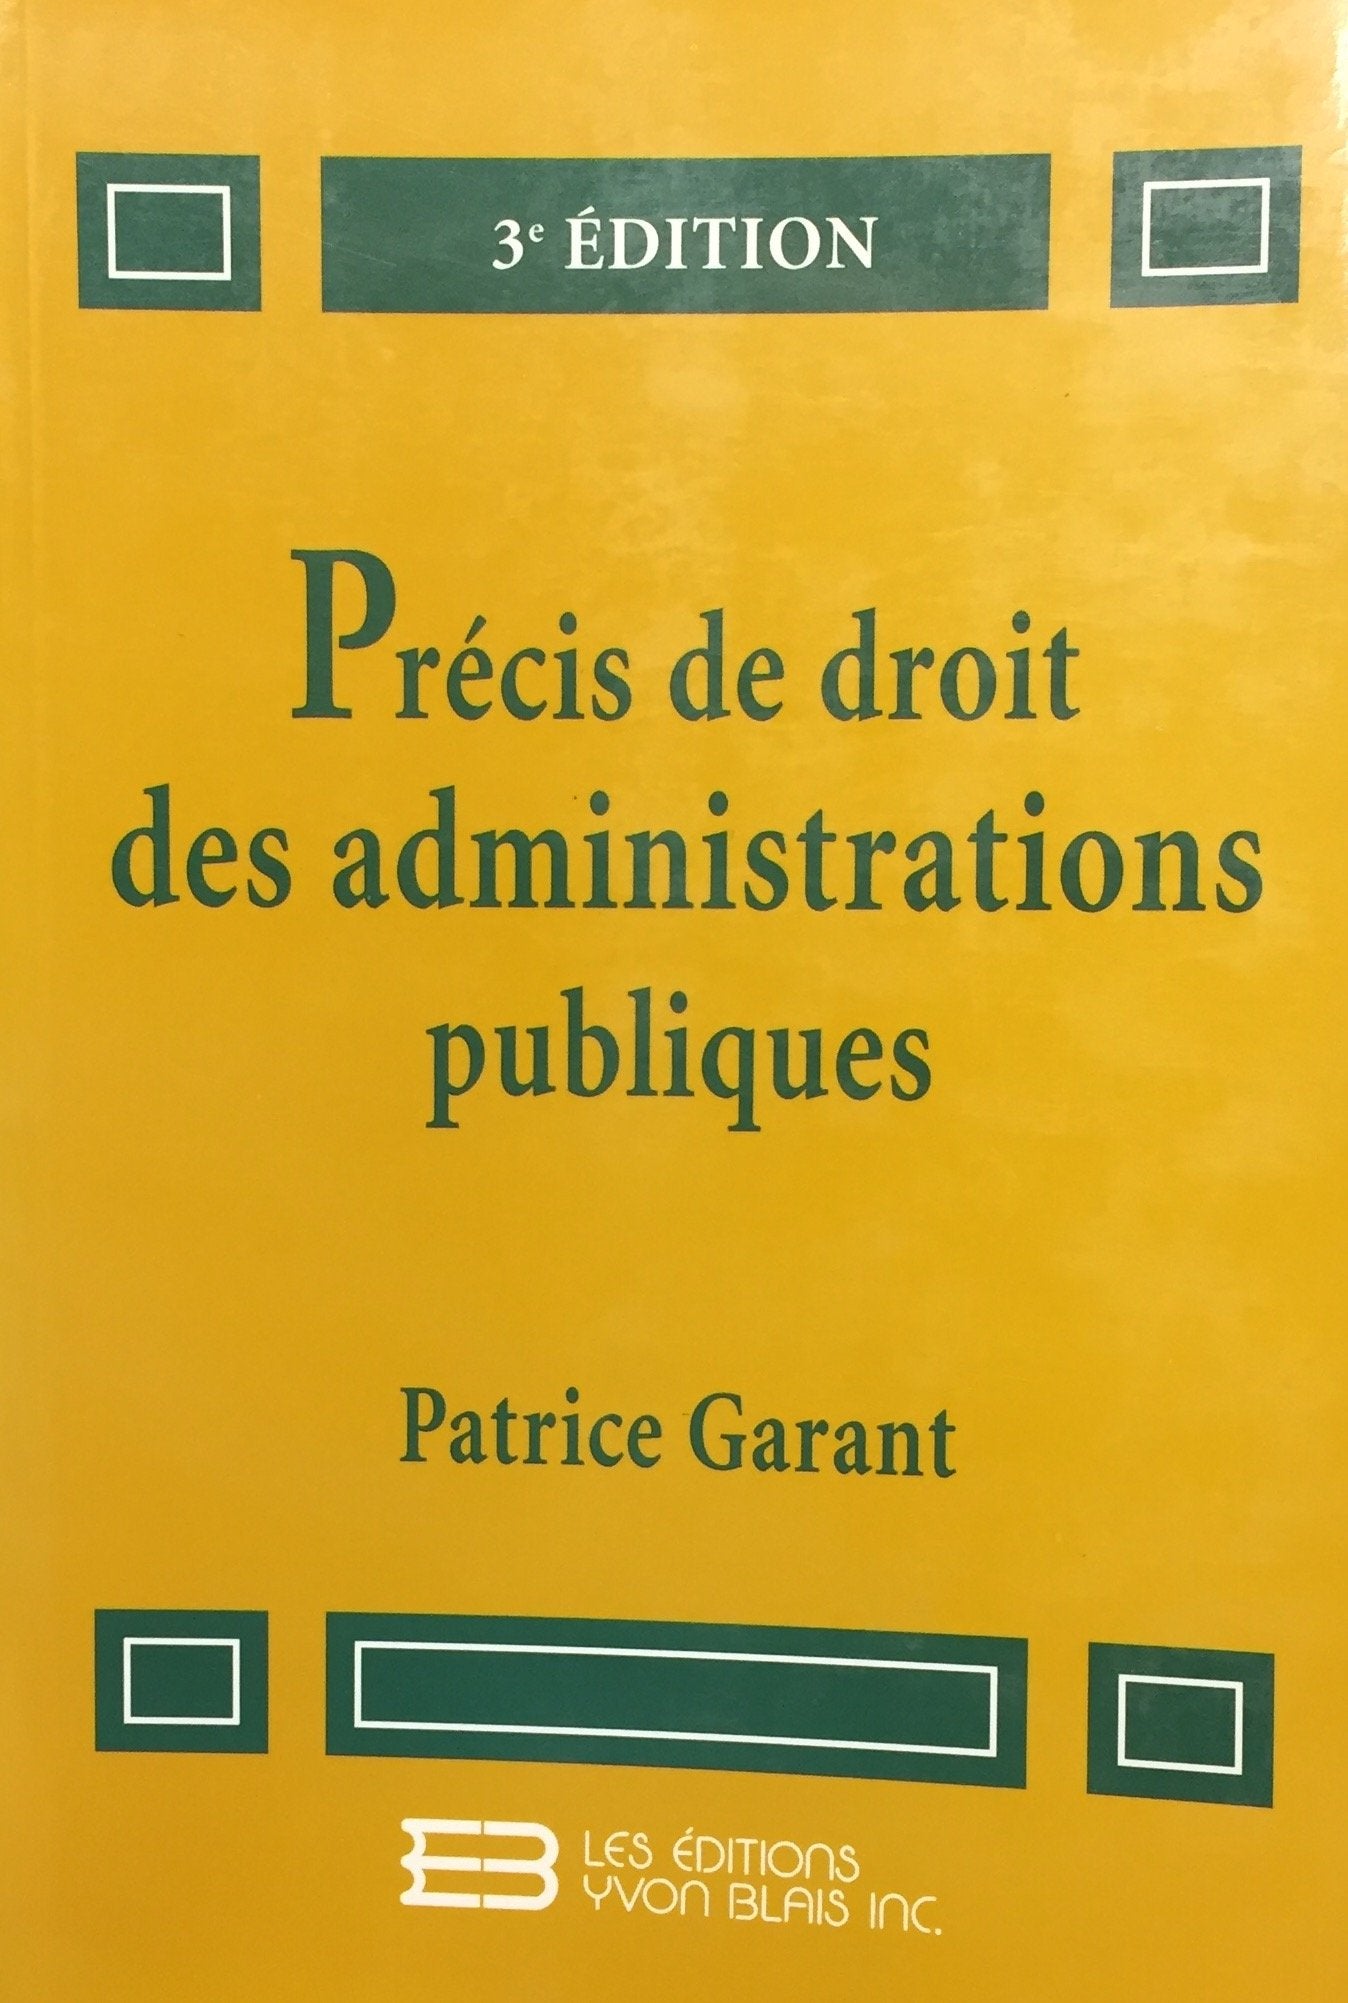 Livre ISBN 2894510489 Précis de droit des administration publiques (3e édition) (Patrice Garant)